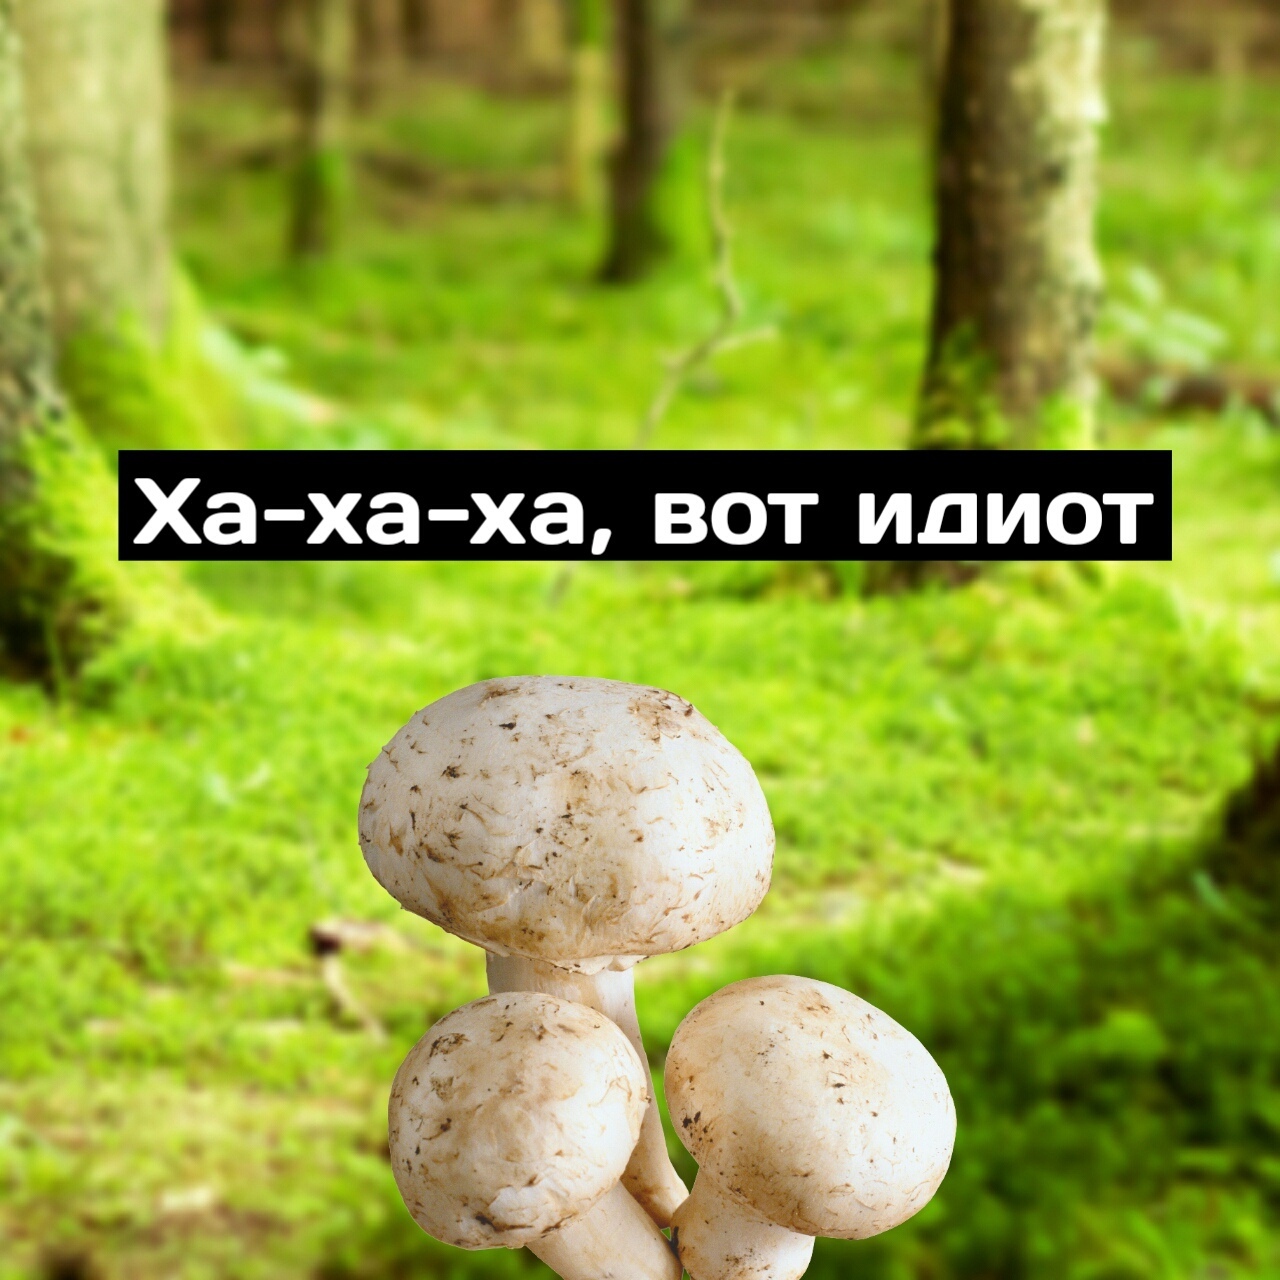 юмор про грибы картинки